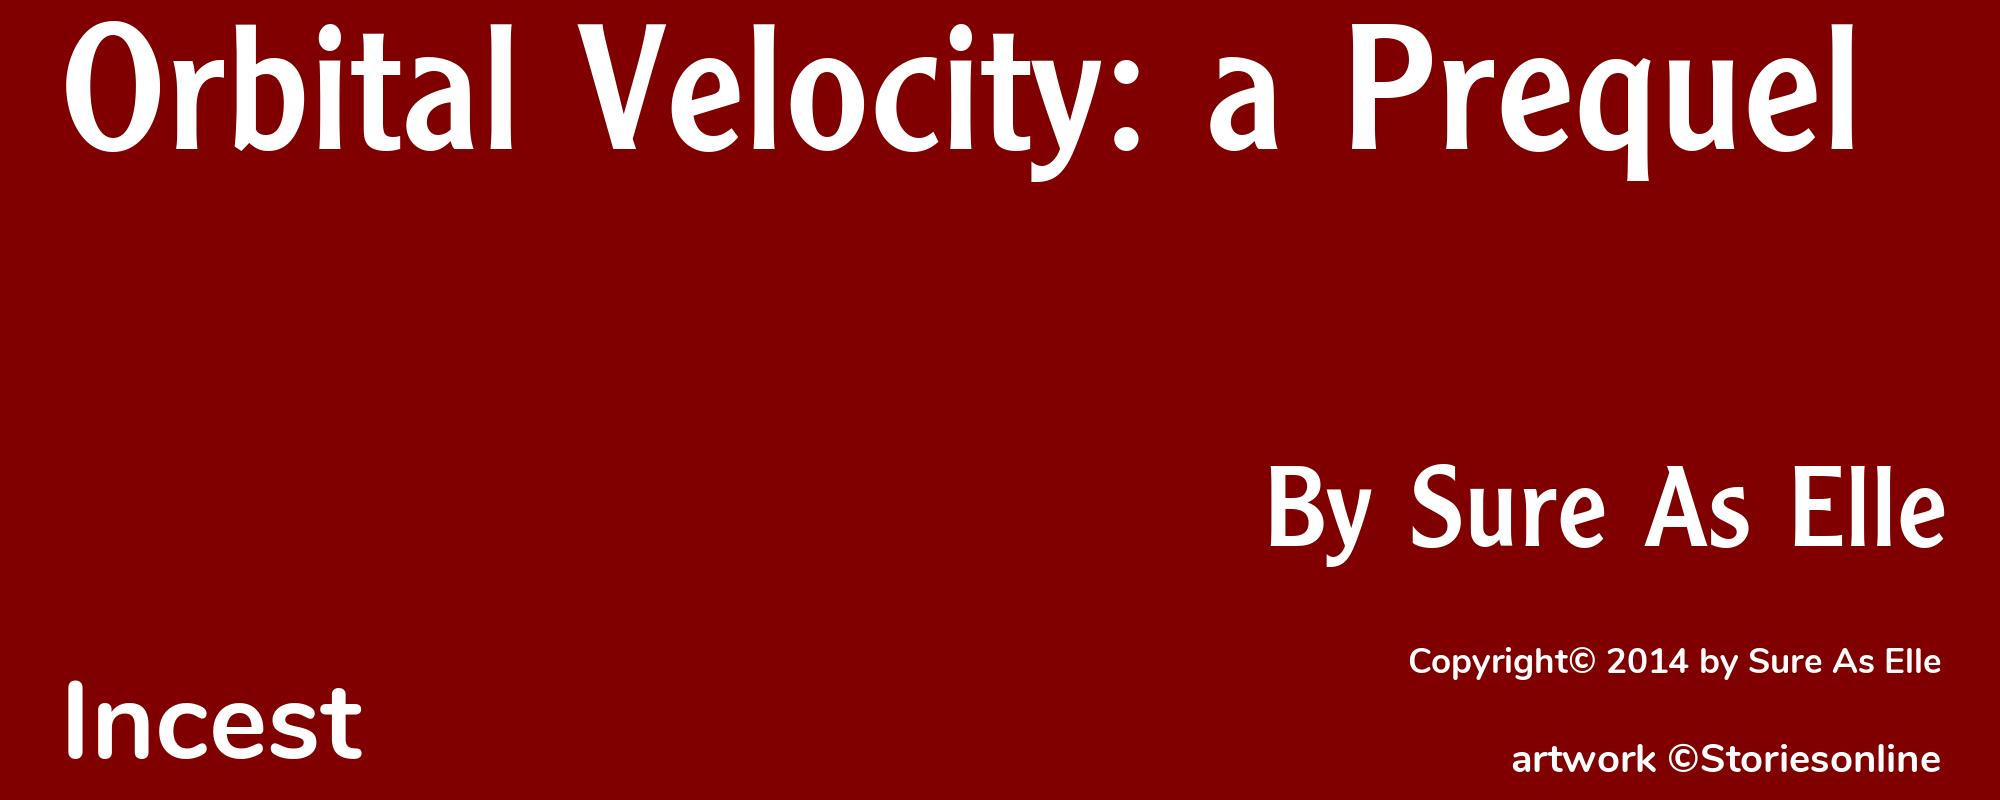 Orbital Velocity: a Prequel - Cover